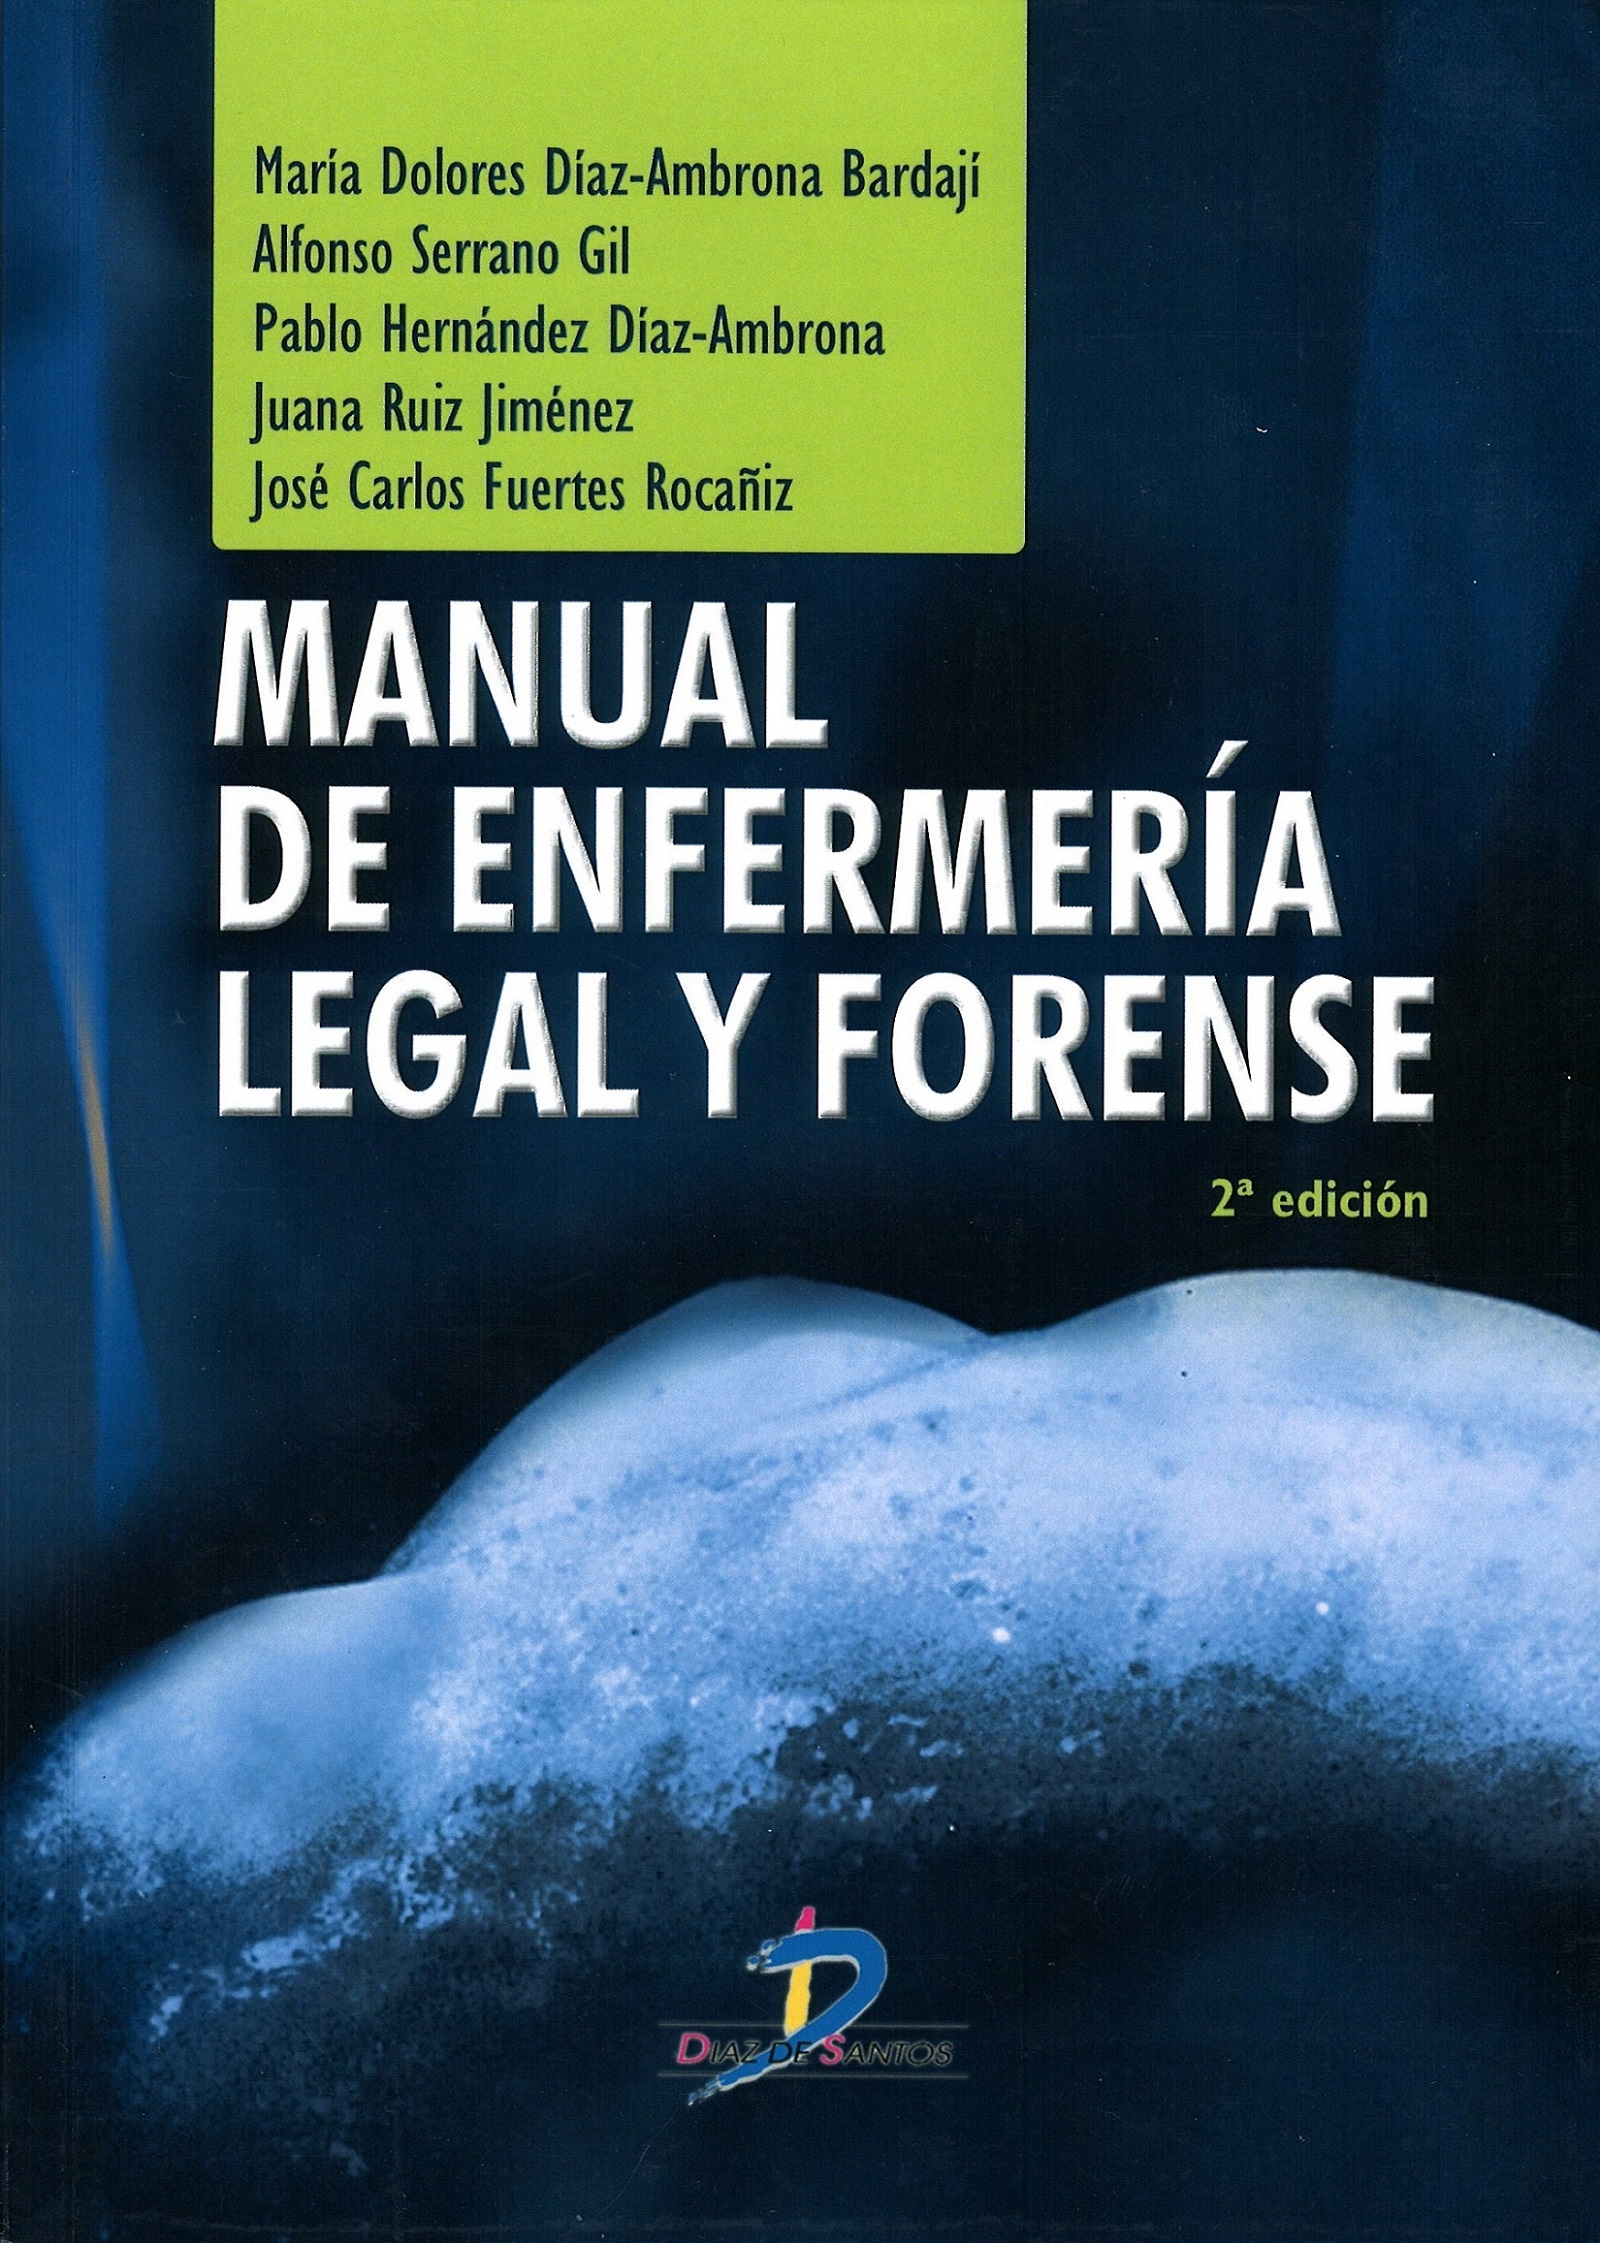 Imagen de portada del libro Manual de enfermería legal y forense